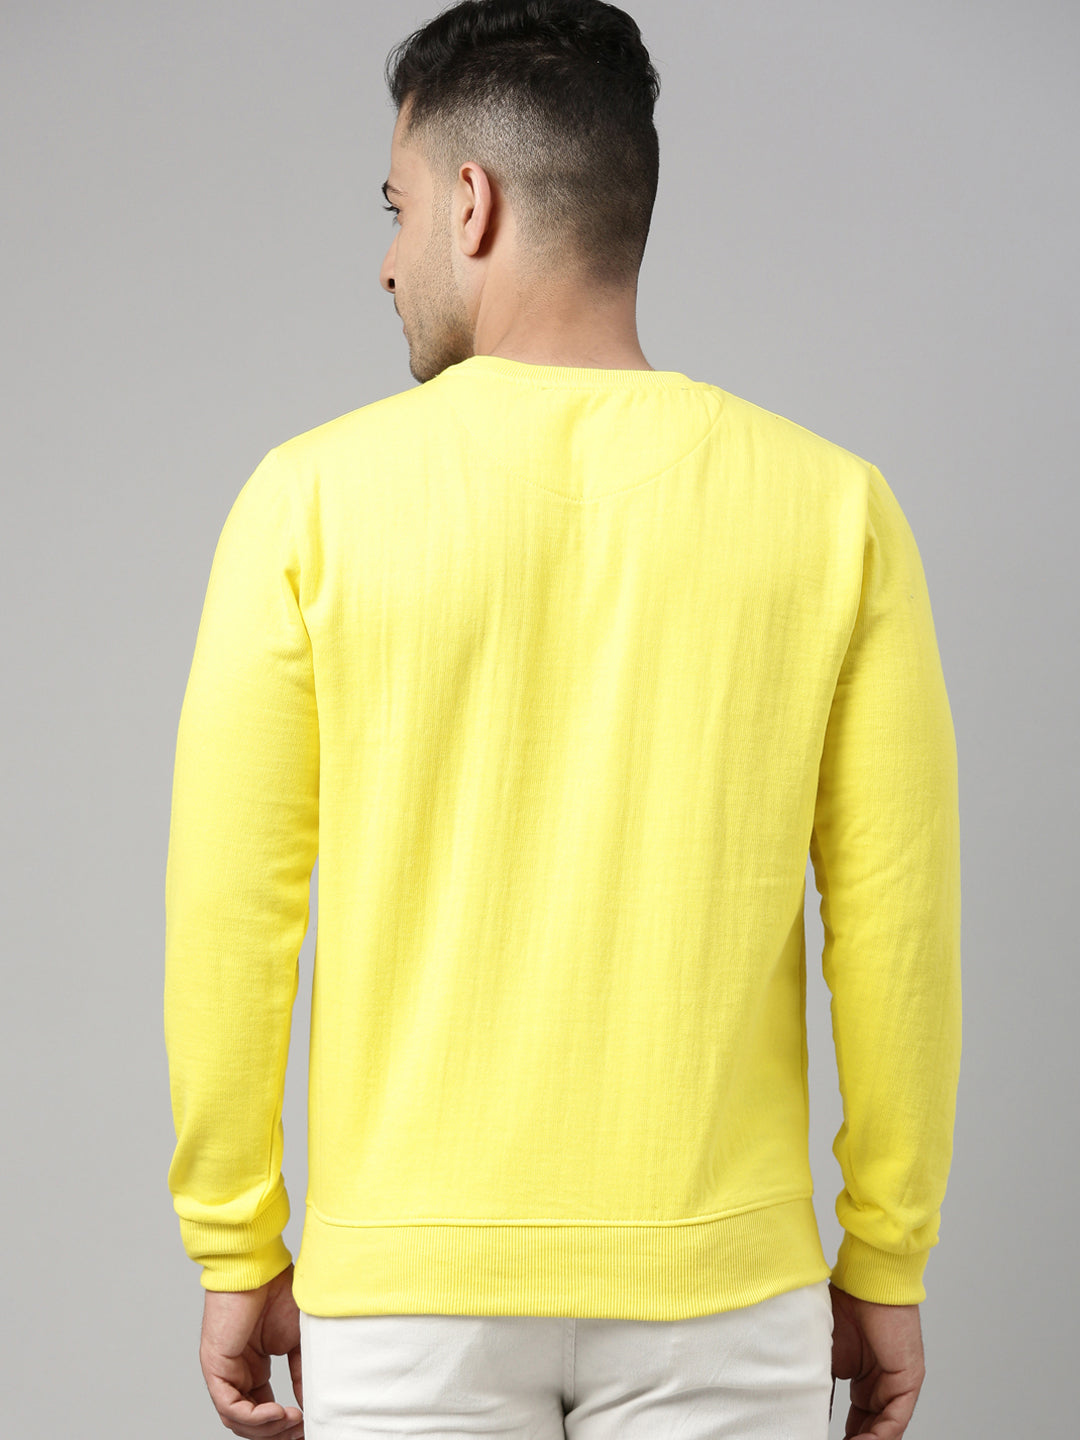 Neon Yellow Solid Sweatshirt Sweatshirt Bushirt   